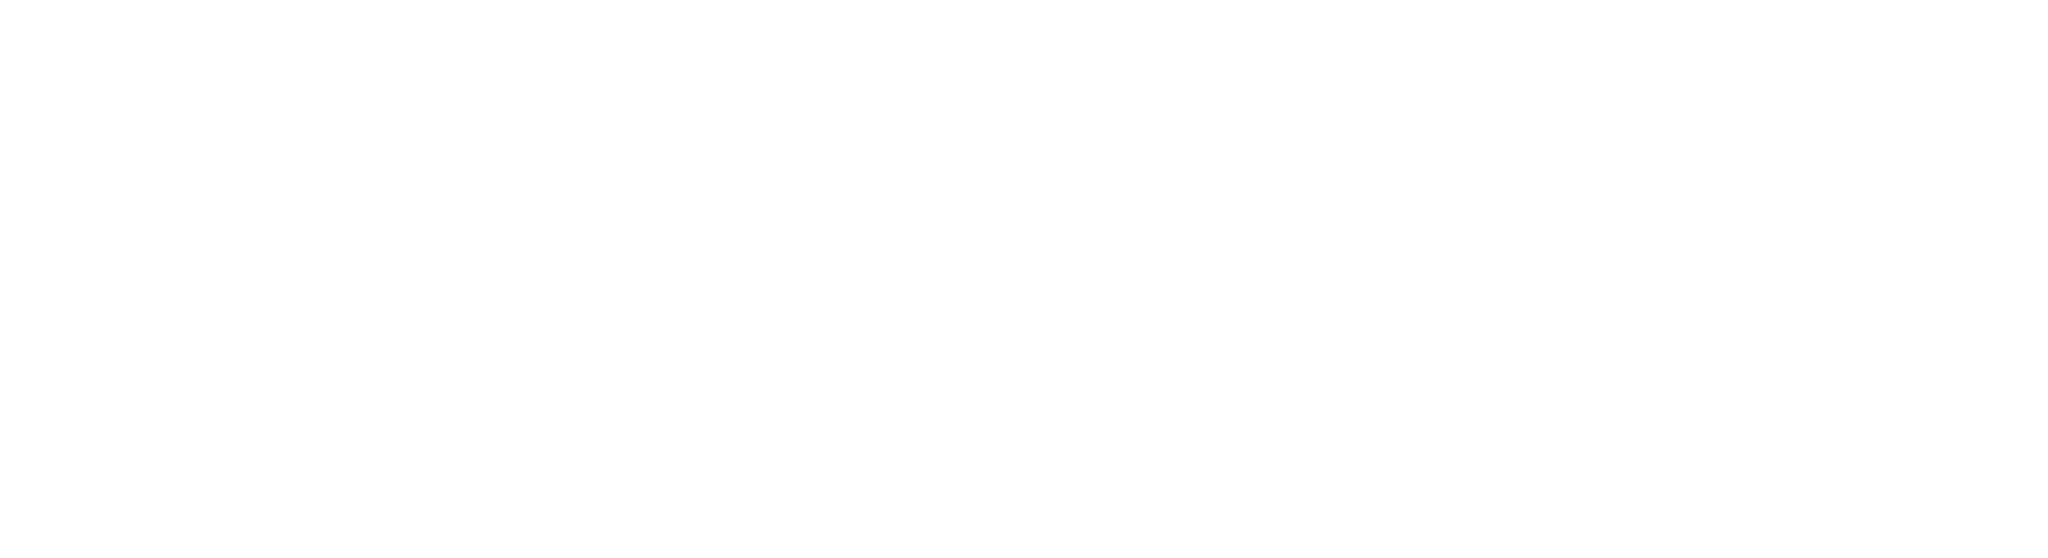 Charleston Kitchen & Bath